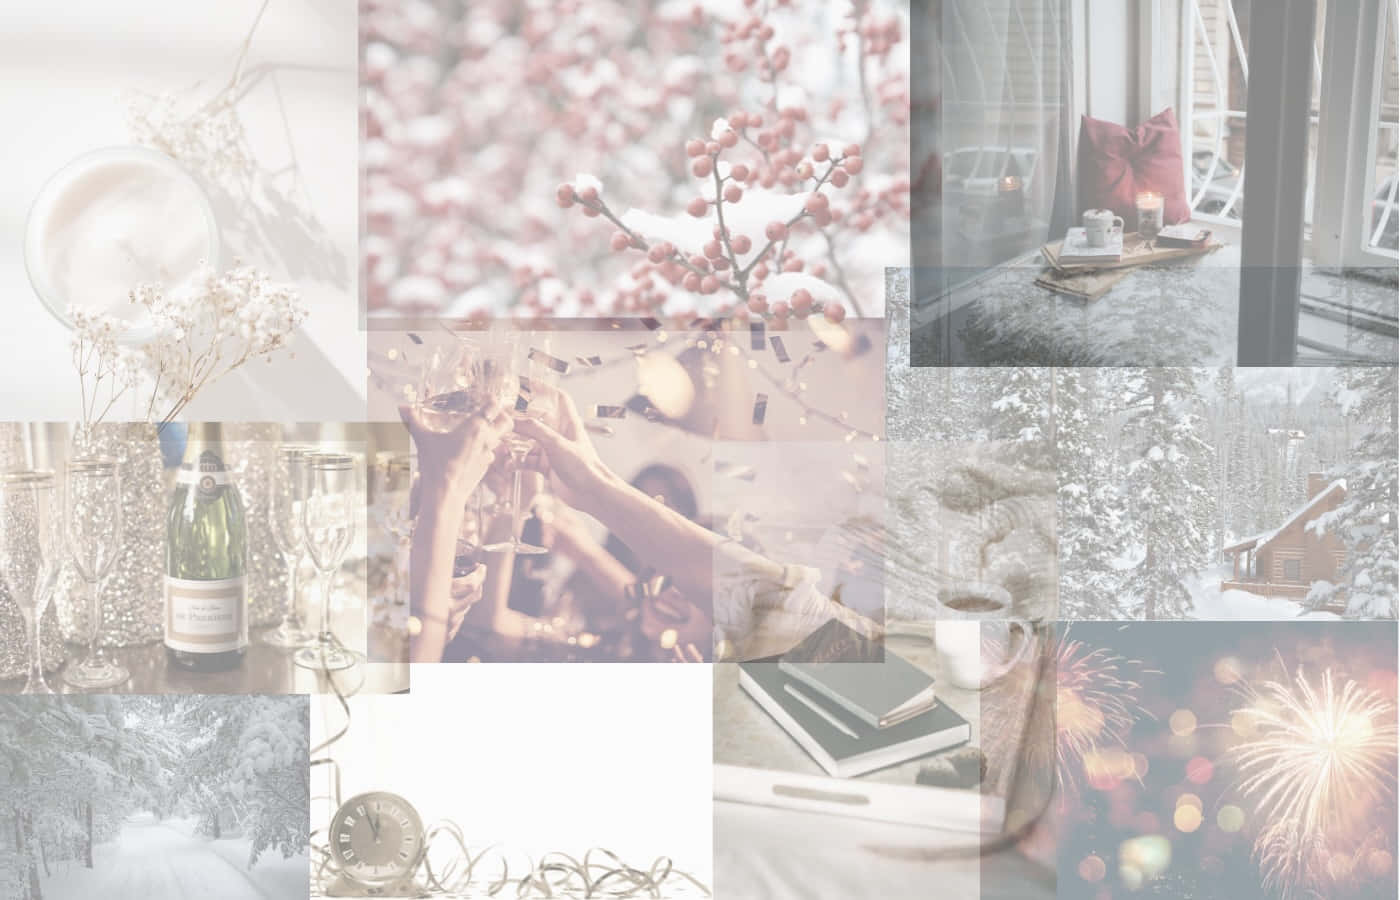 January Winter Collage Aesthetic.jpg Wallpaper